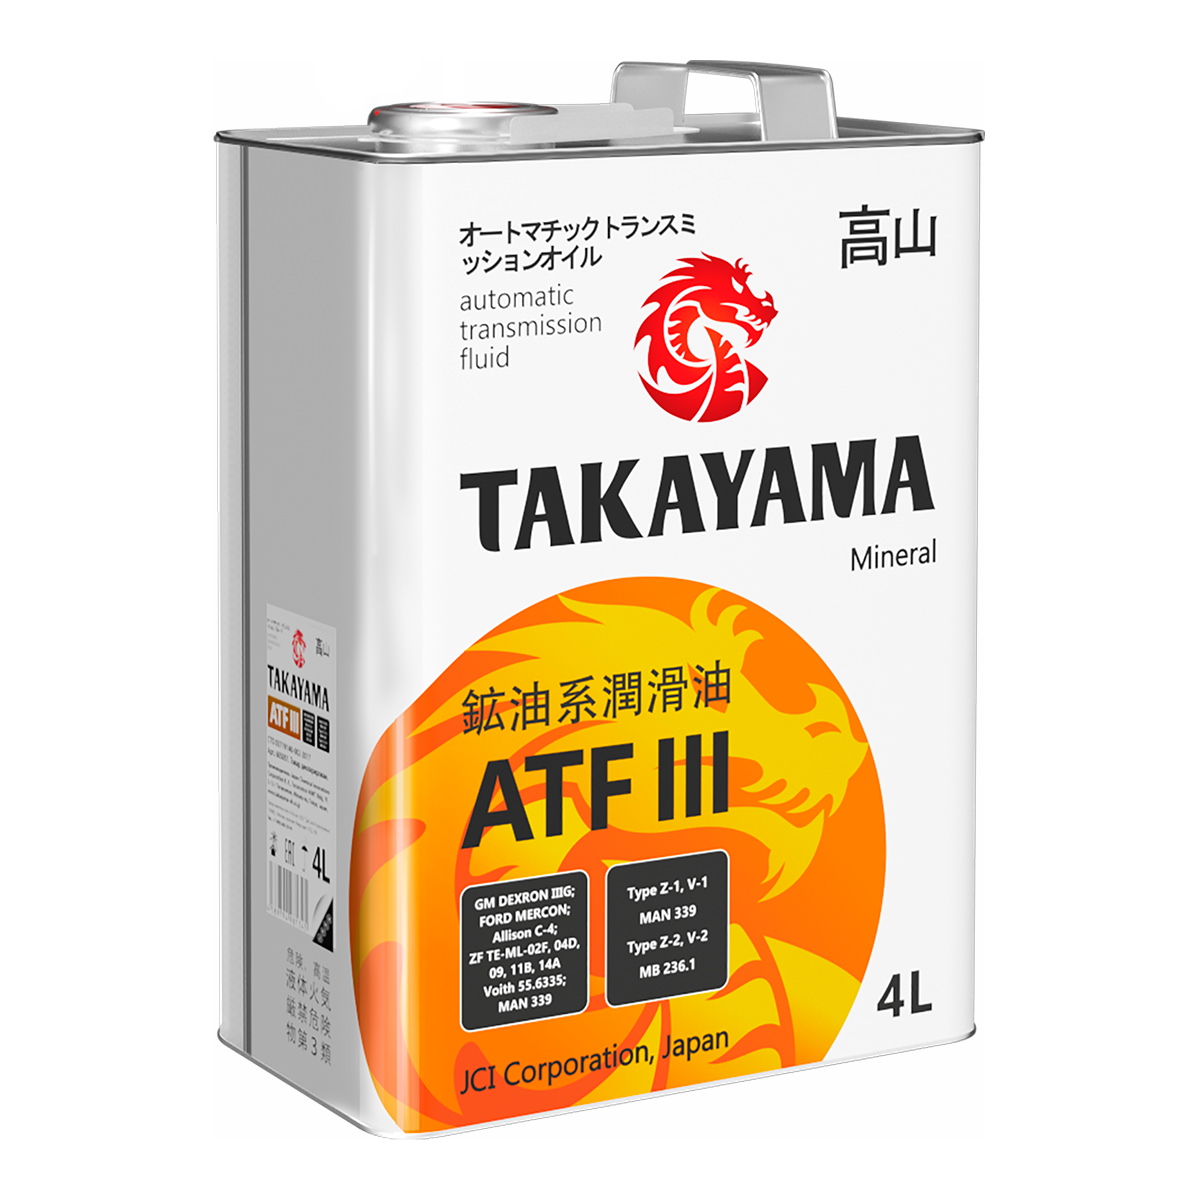 Takayama Transmission Atf Lll 1л Металл TAKAYAMA арт. 605600/605050